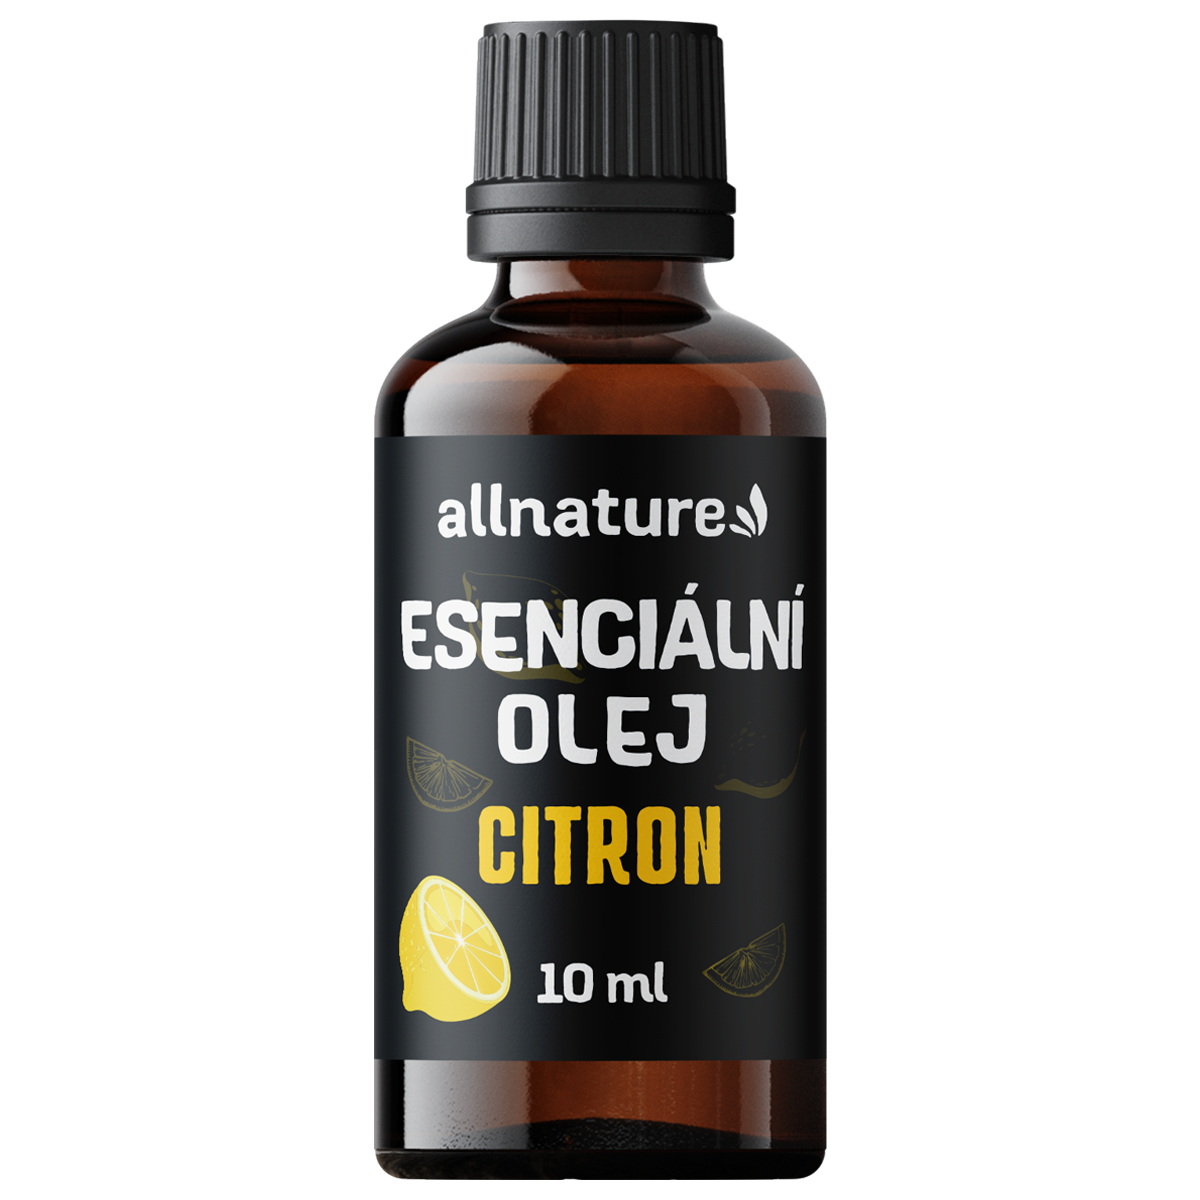 Allnature Esenciální olej Citron (10 ml) - podporuje dobrou náladu a koncentraci